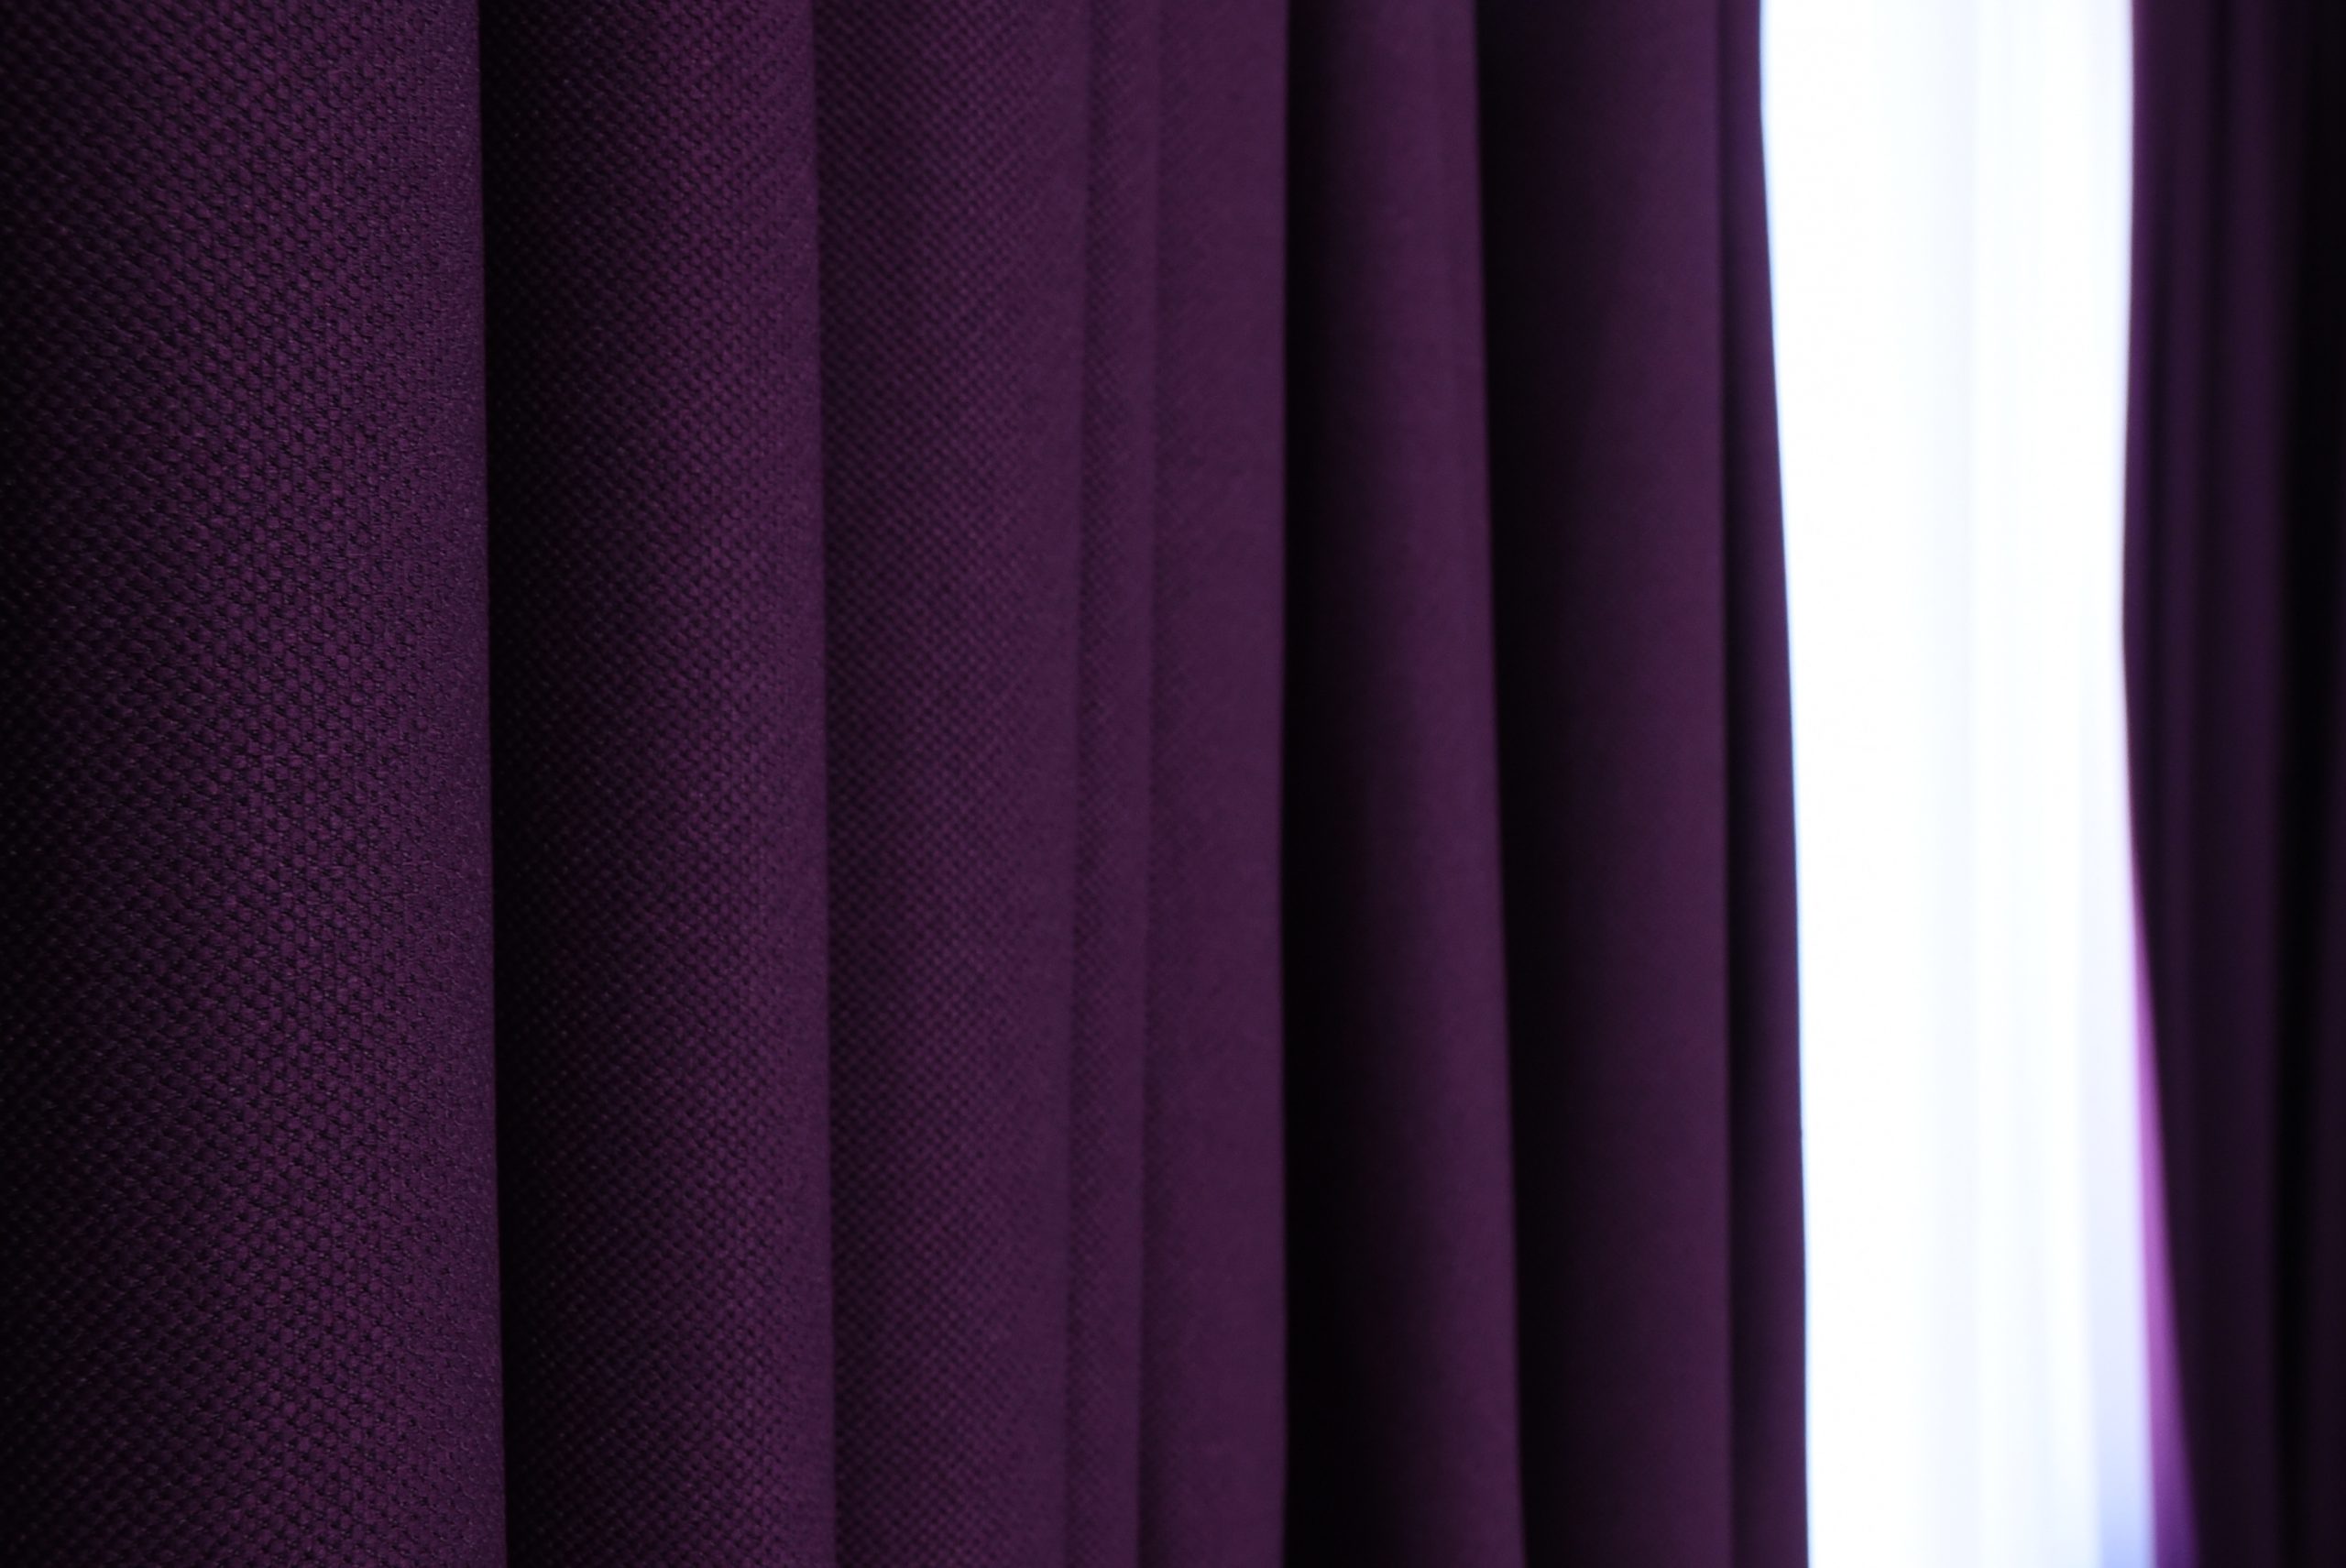 House of Linen's Nova blackout purple curtains